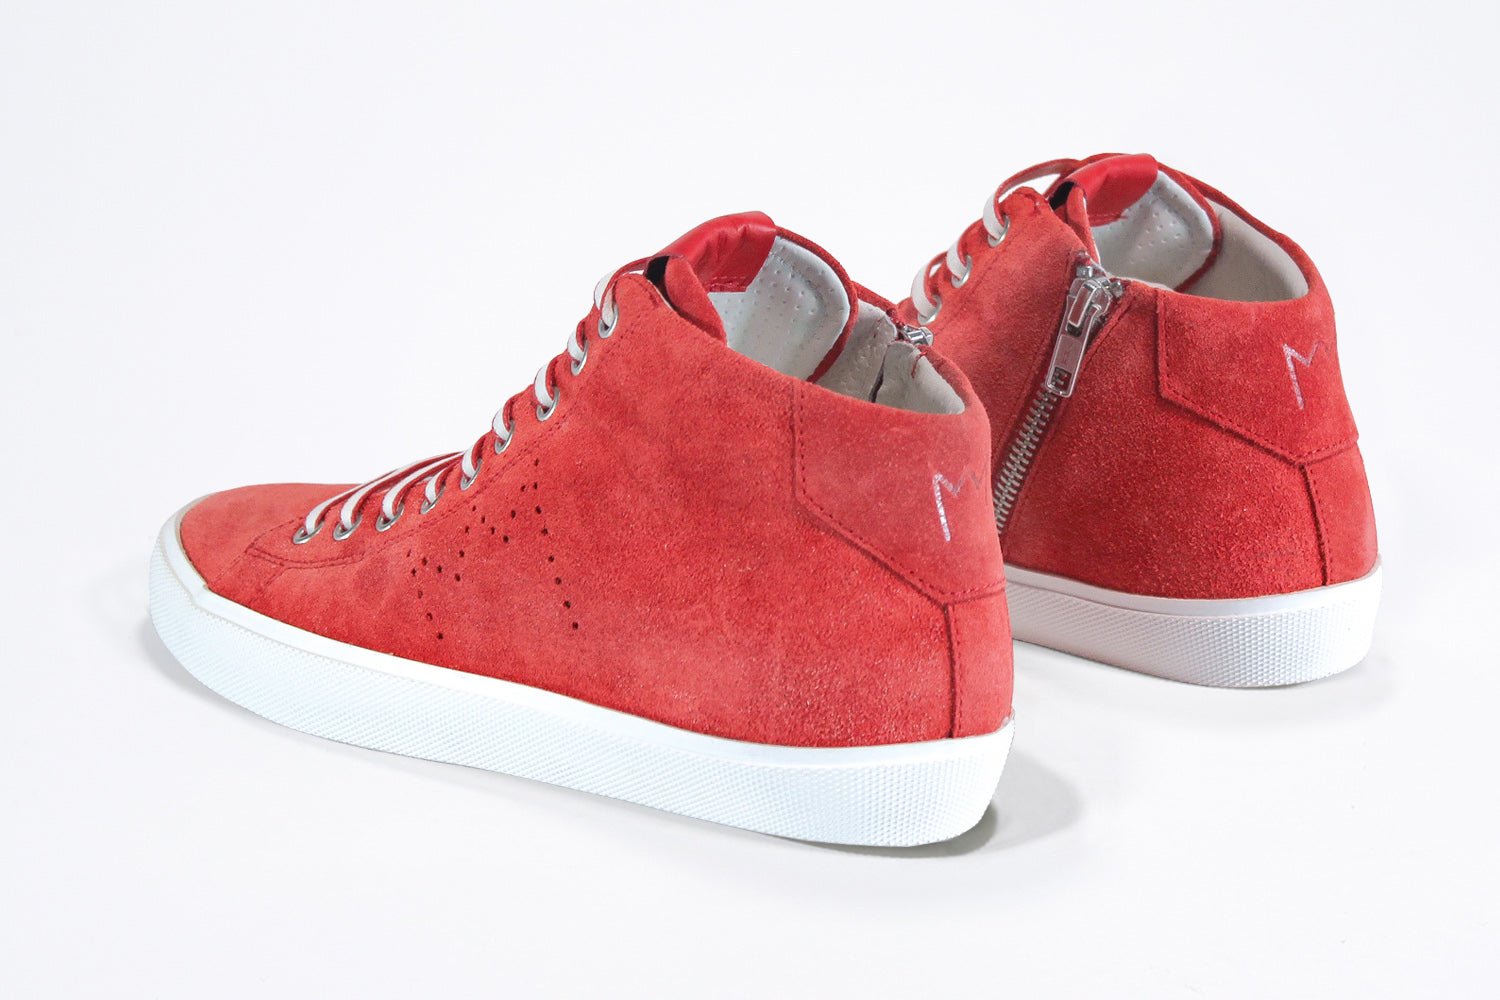  Dreiviertelansicht der Rückseite von sneaker aus rotem Wildleder und Leder, mit Innenreißverschluss und weißer Sohle.